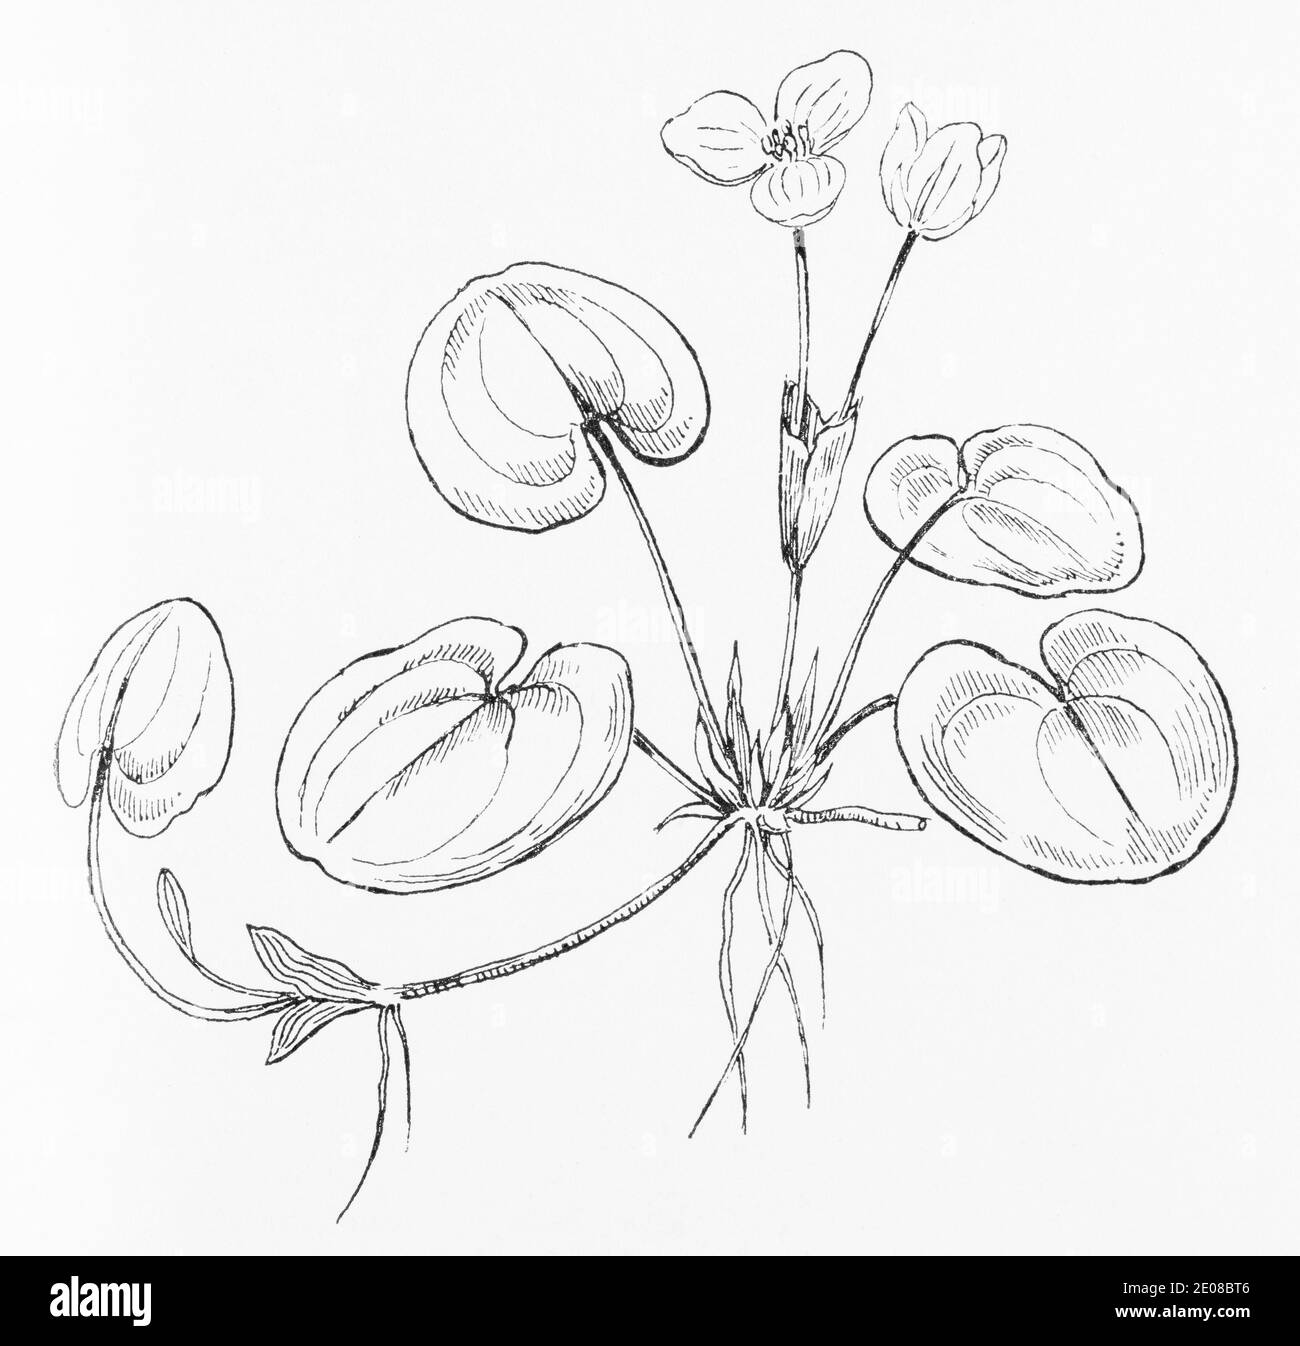 Ancienne gravure d'illustration botanique de Frogbit / Hydrocharis morsus-ranae. Voir Remarques Banque D'Images